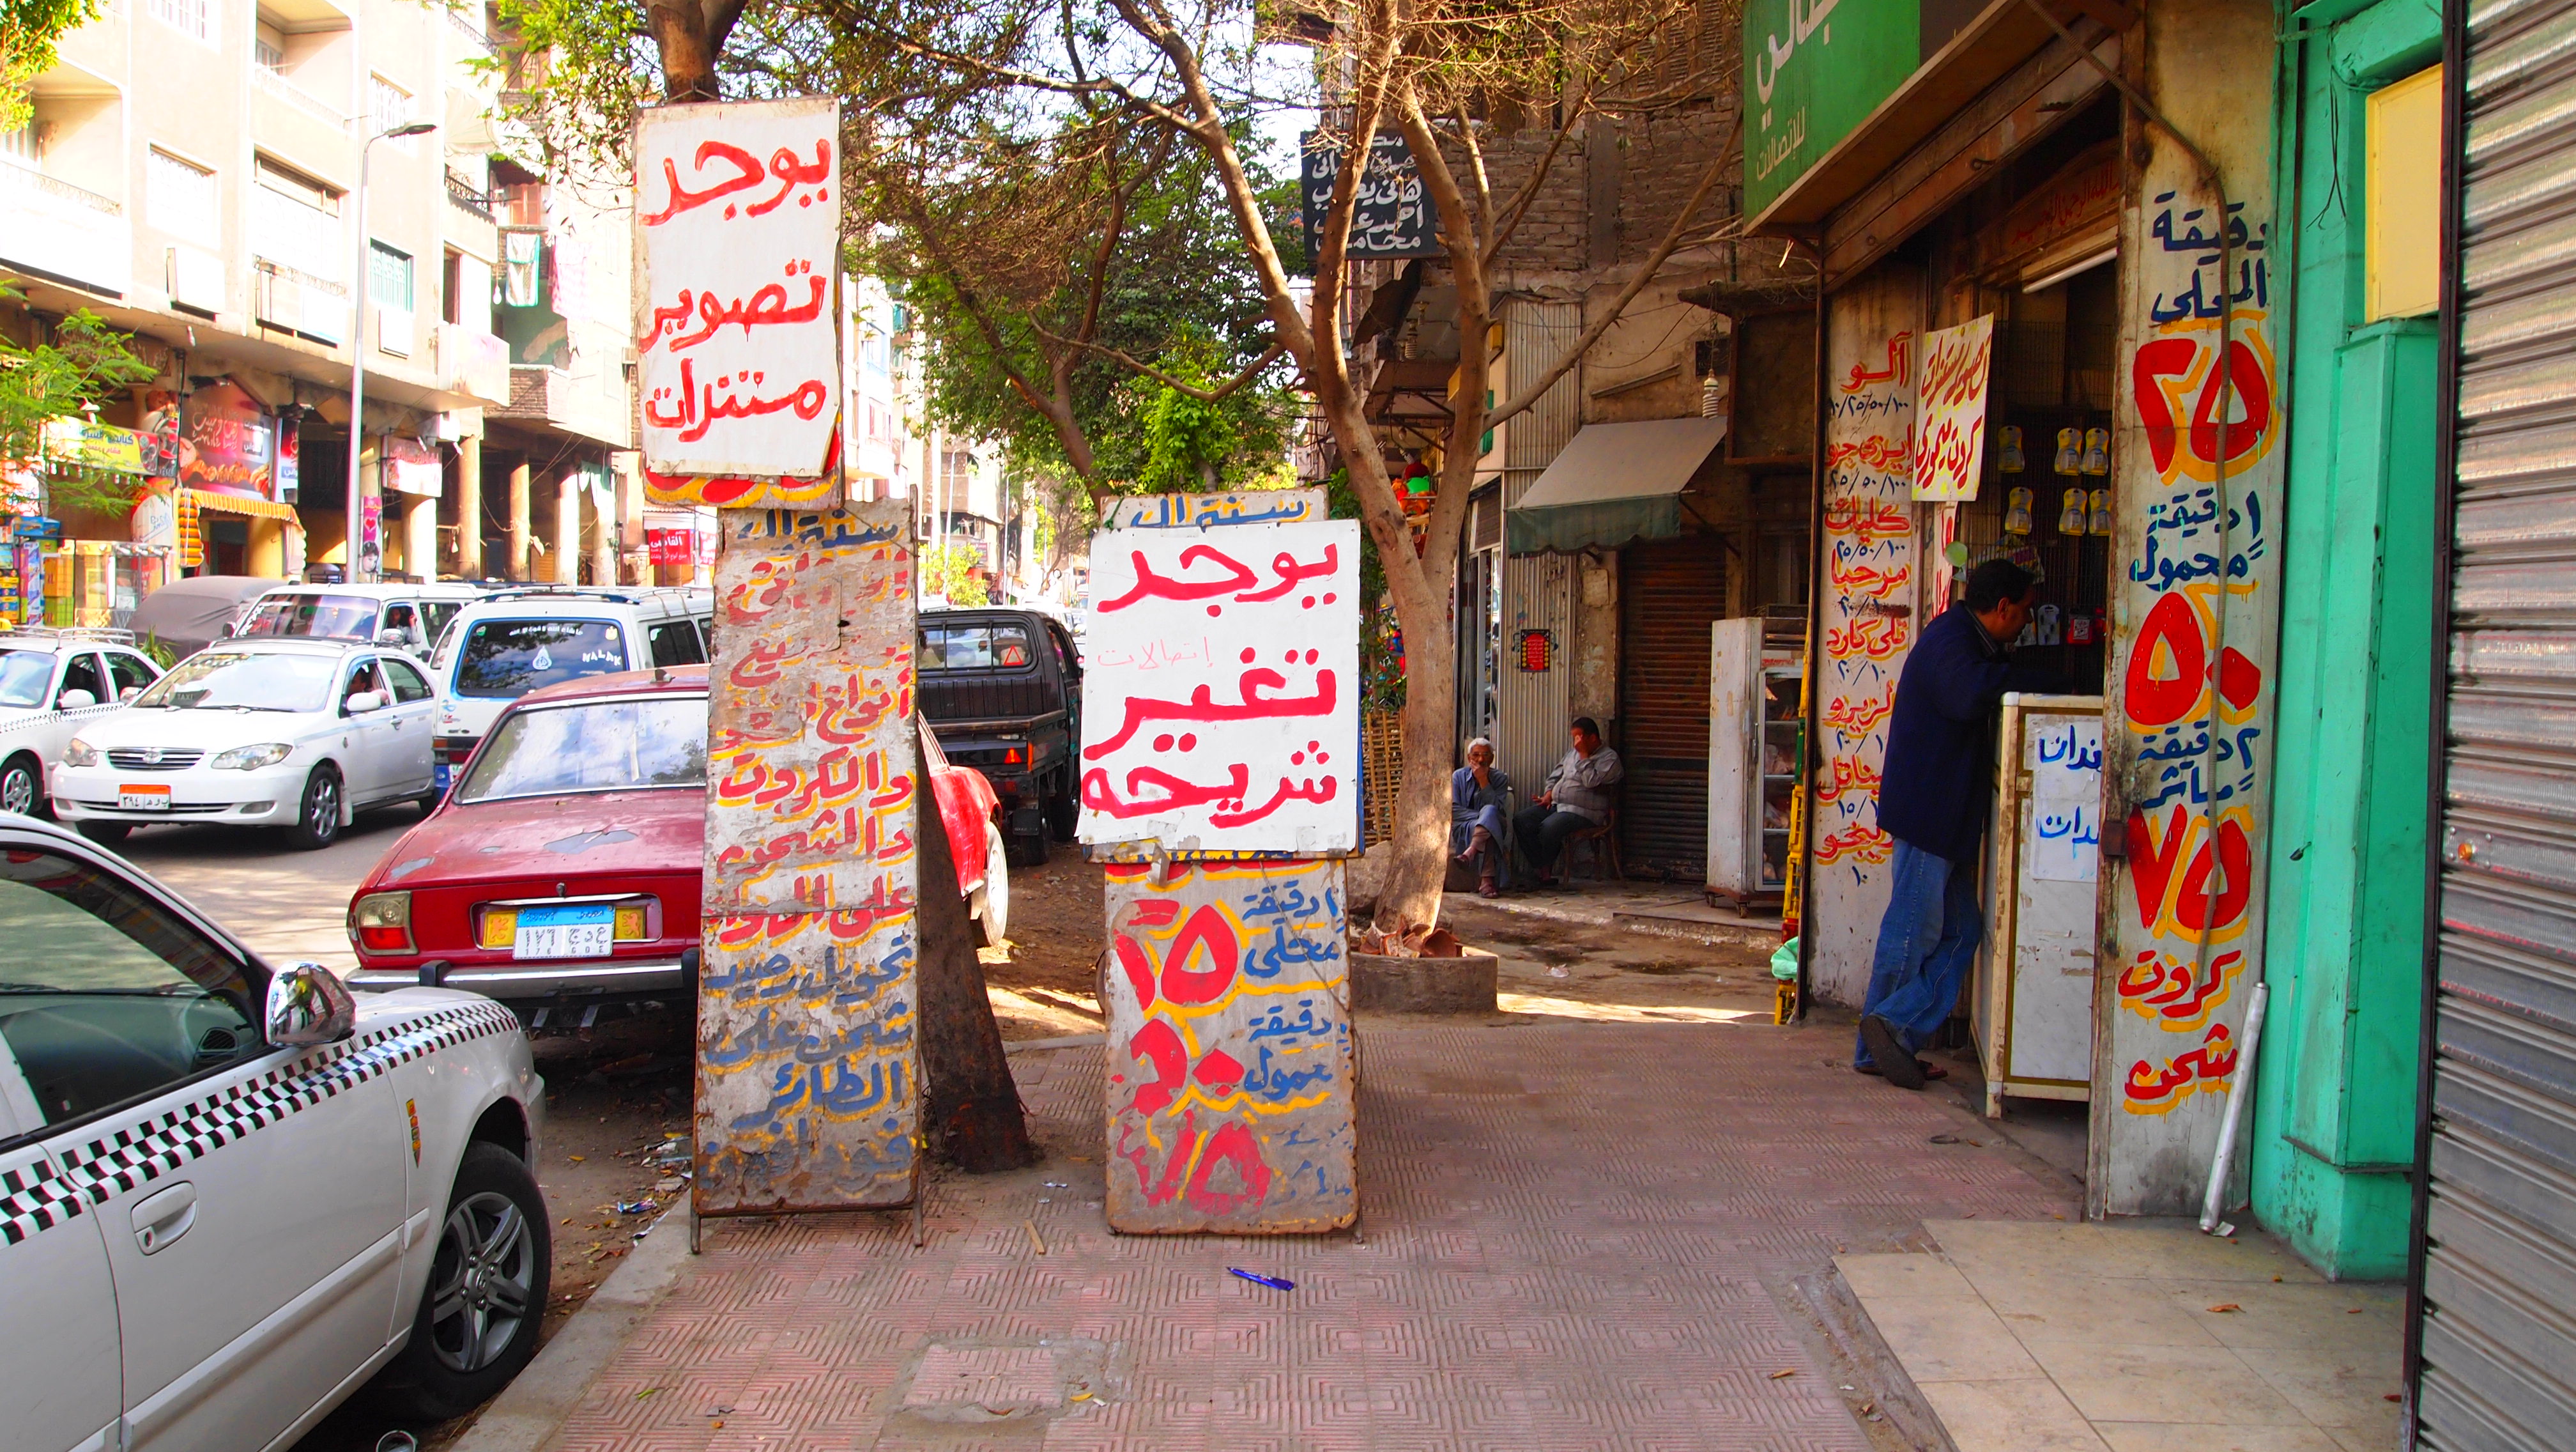 길거리의 낯선 아랍어는 이질감을 극대화 시켜준다.